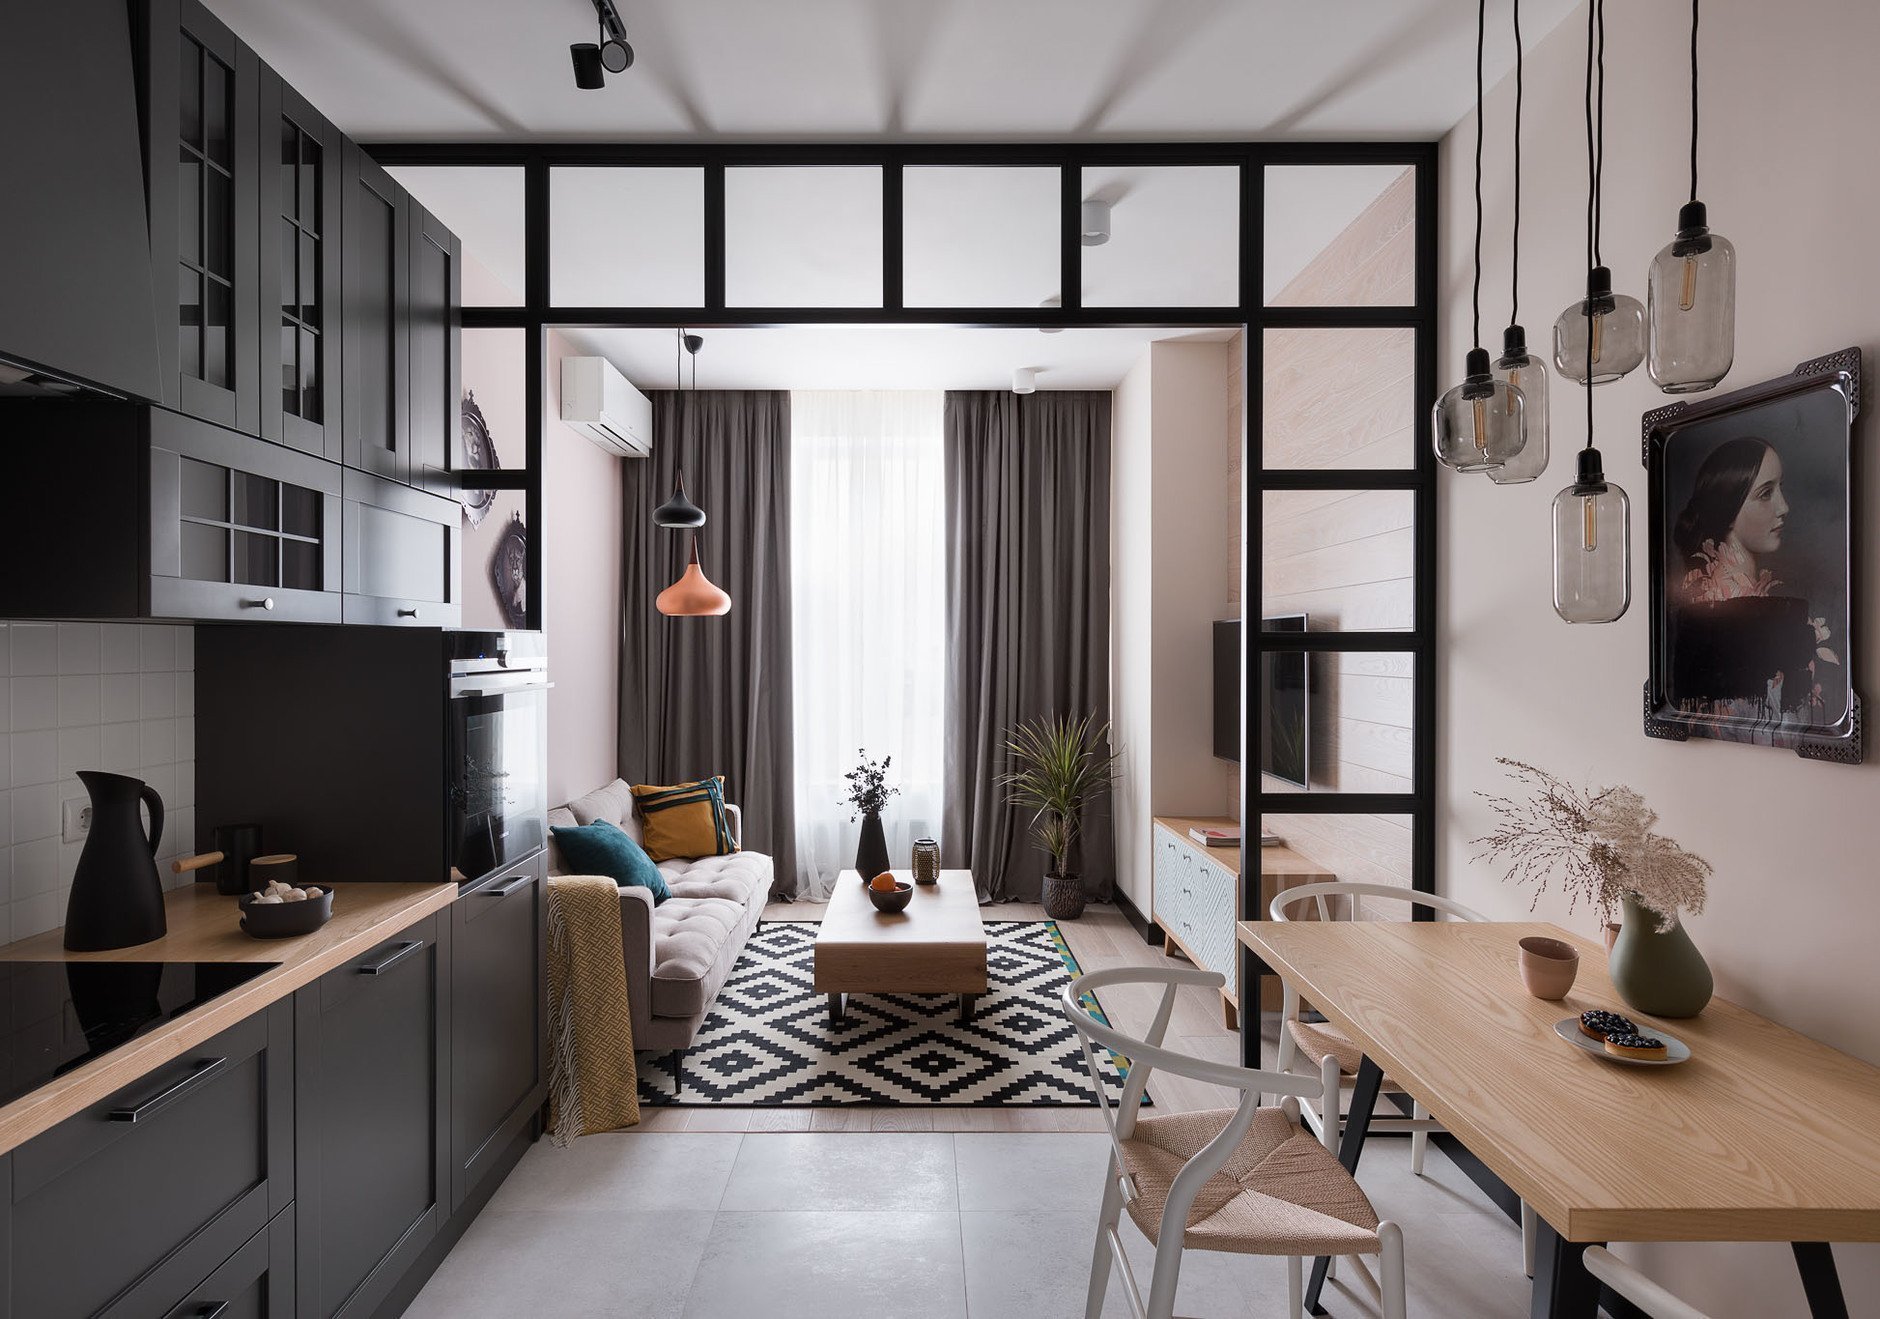 Důmyslně řešený malý byt ve skandinávském stylu